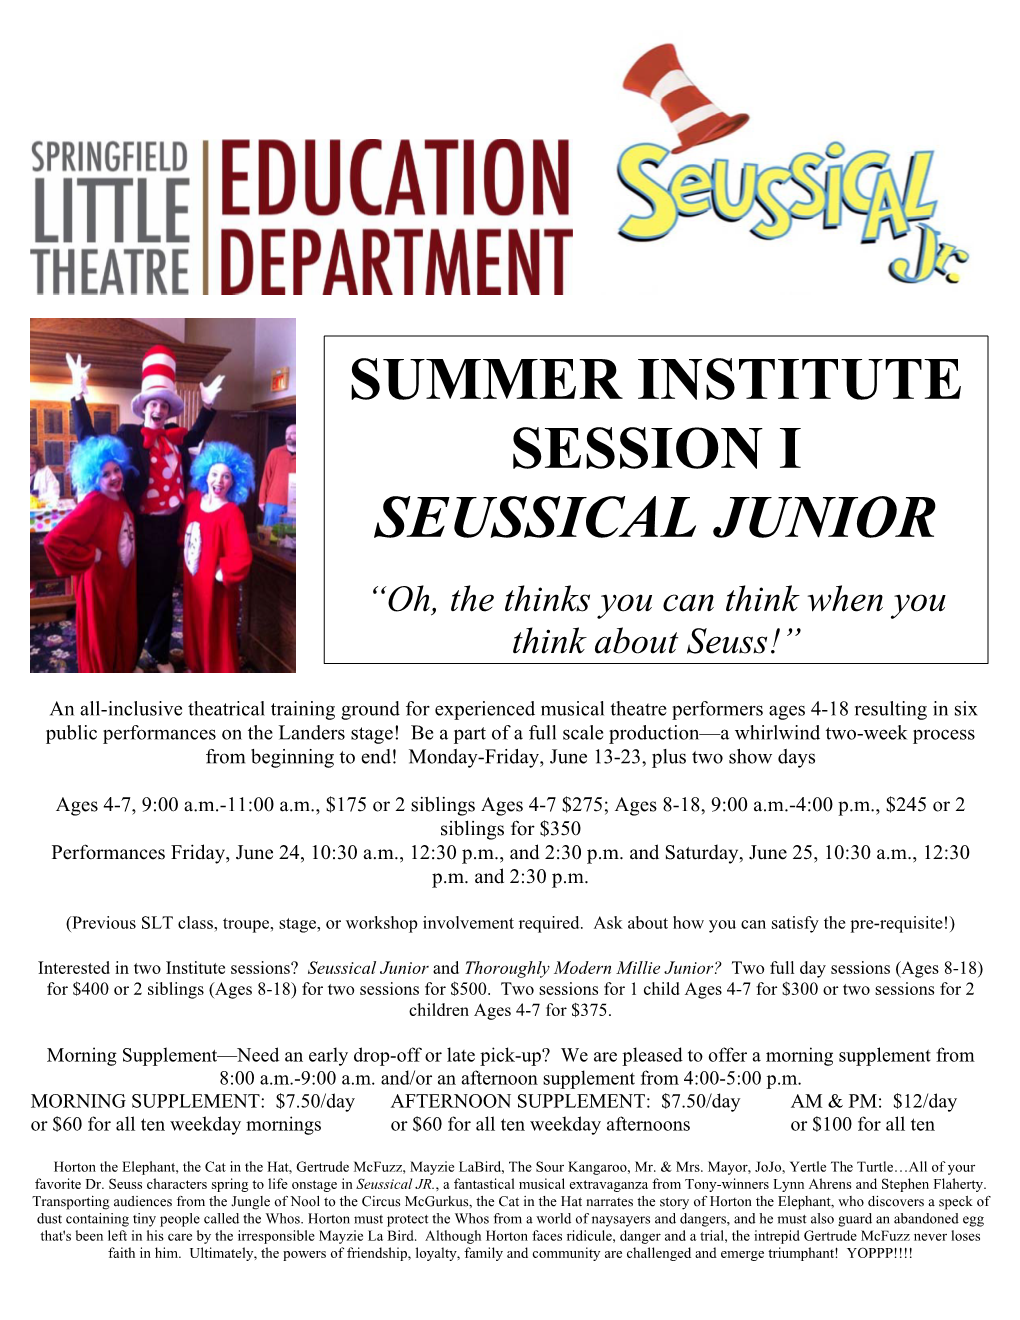 Summer Institute Session I Seussical Junior